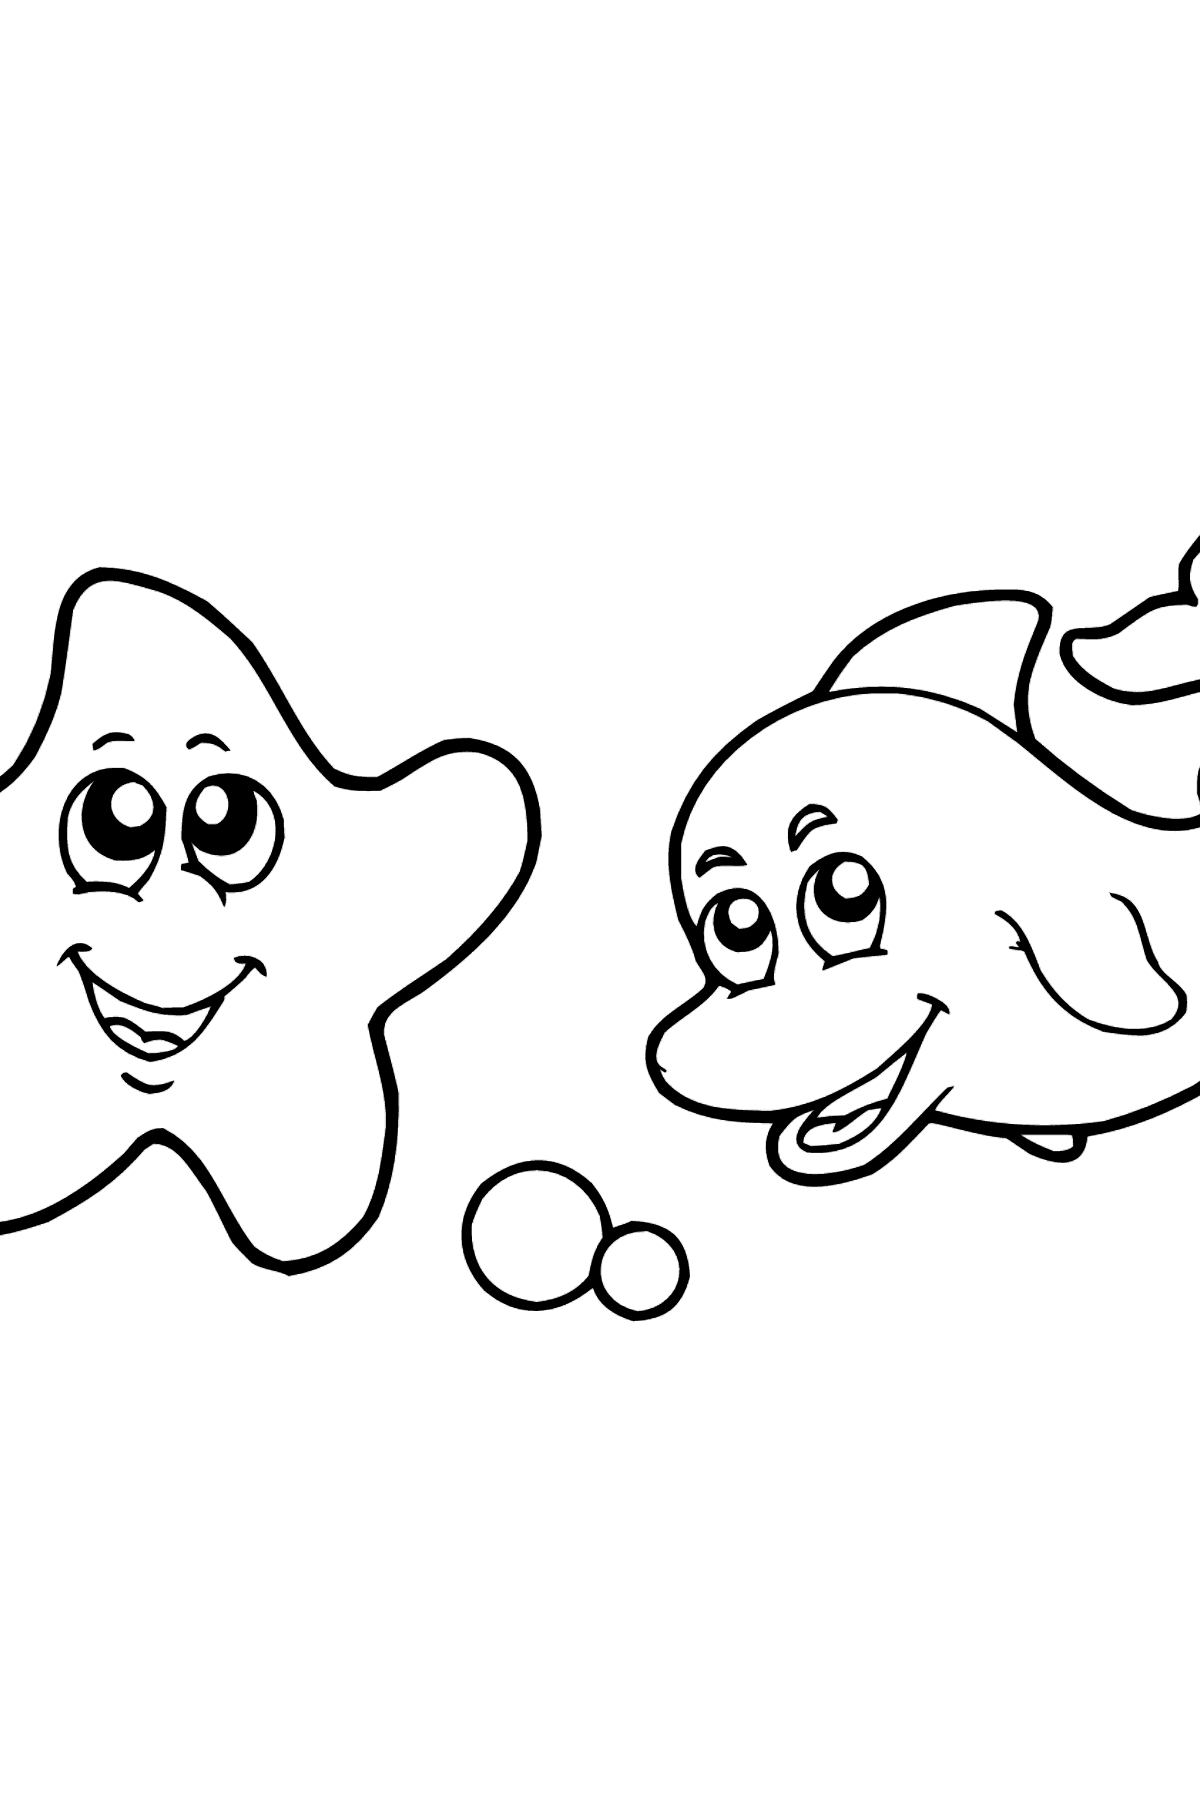 Раскраска Дельфин и Морская звезда - Картинки для Детей